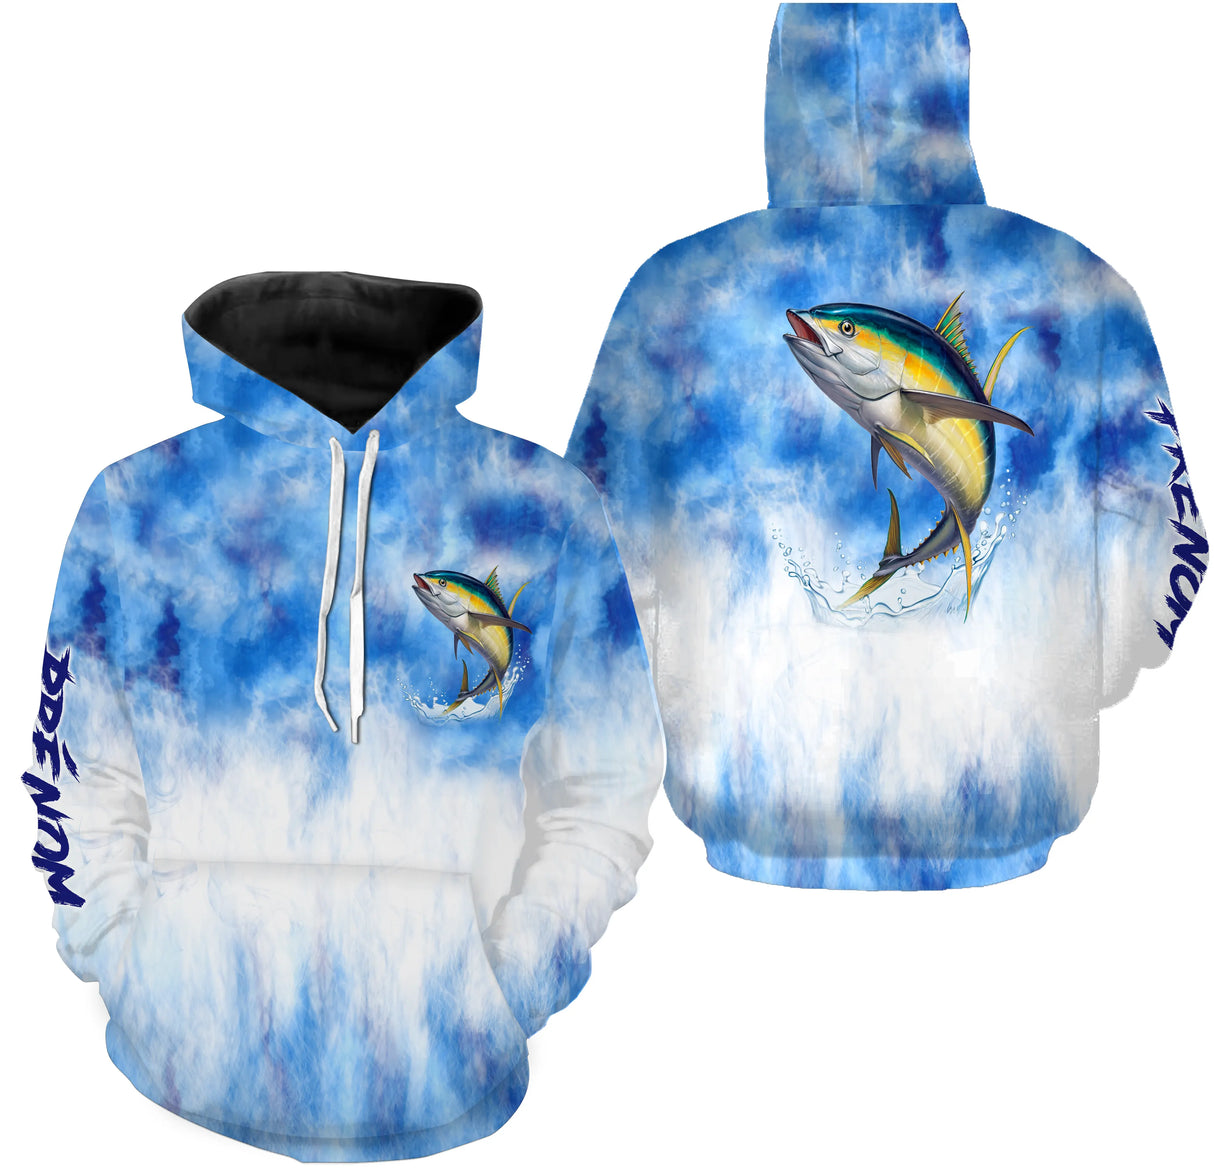 Camiseta Pesca del Atún, Regalo Original de Pescador, Ropa Personalizada para Pesca en el Mar - CT21122229